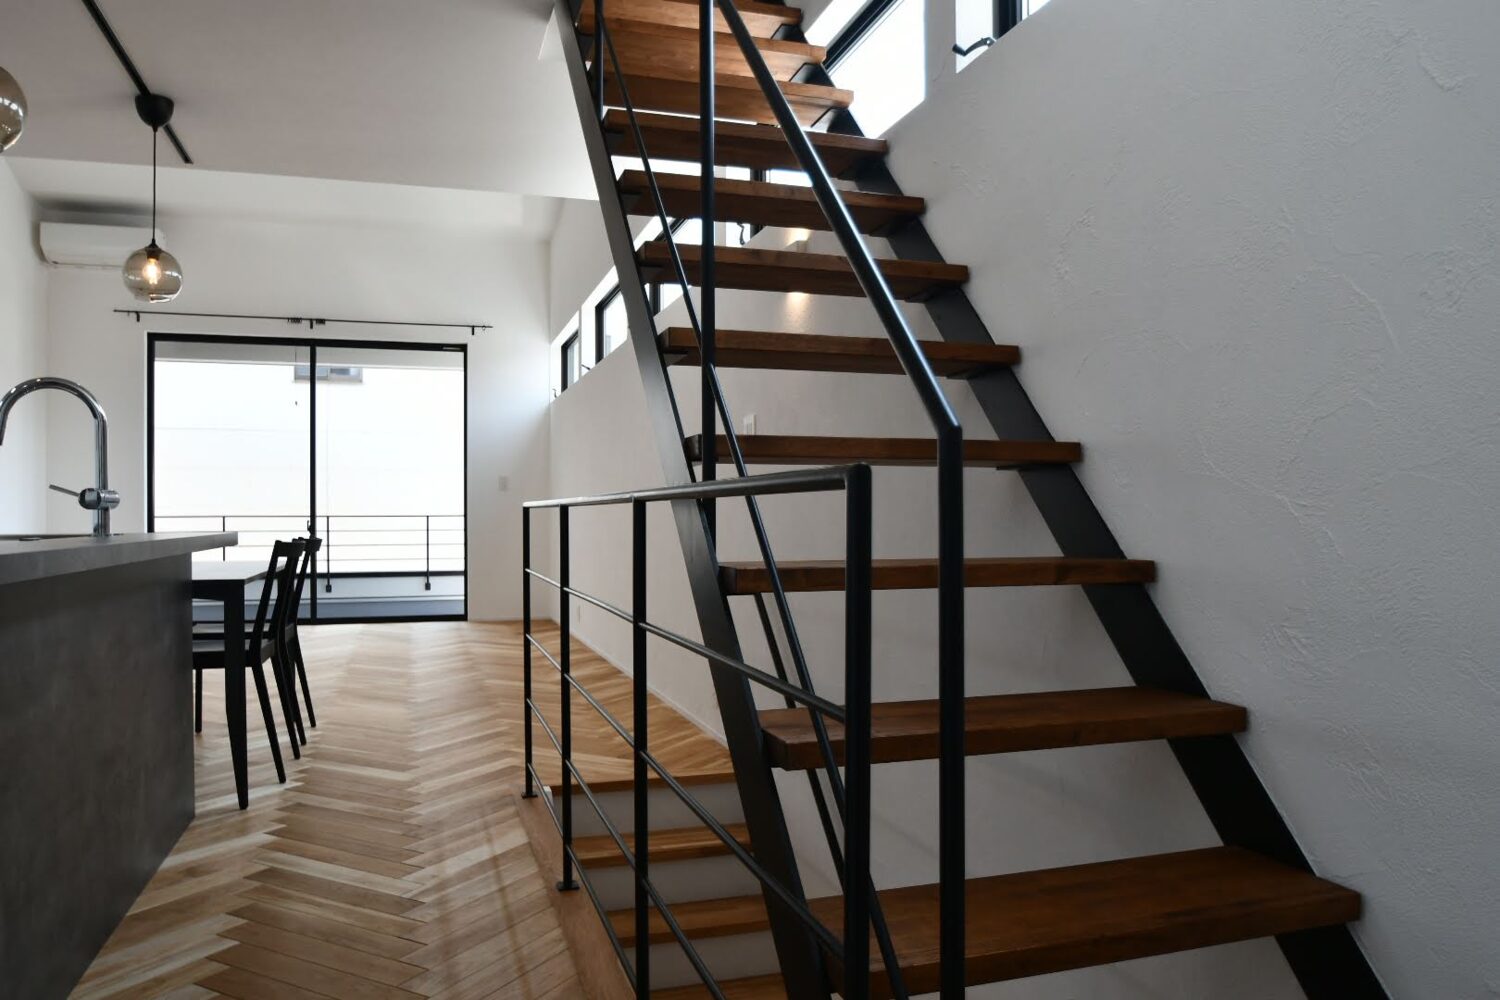 ヘリンボーンの床とアイアンのスケルトン階段が
かっこいいお家